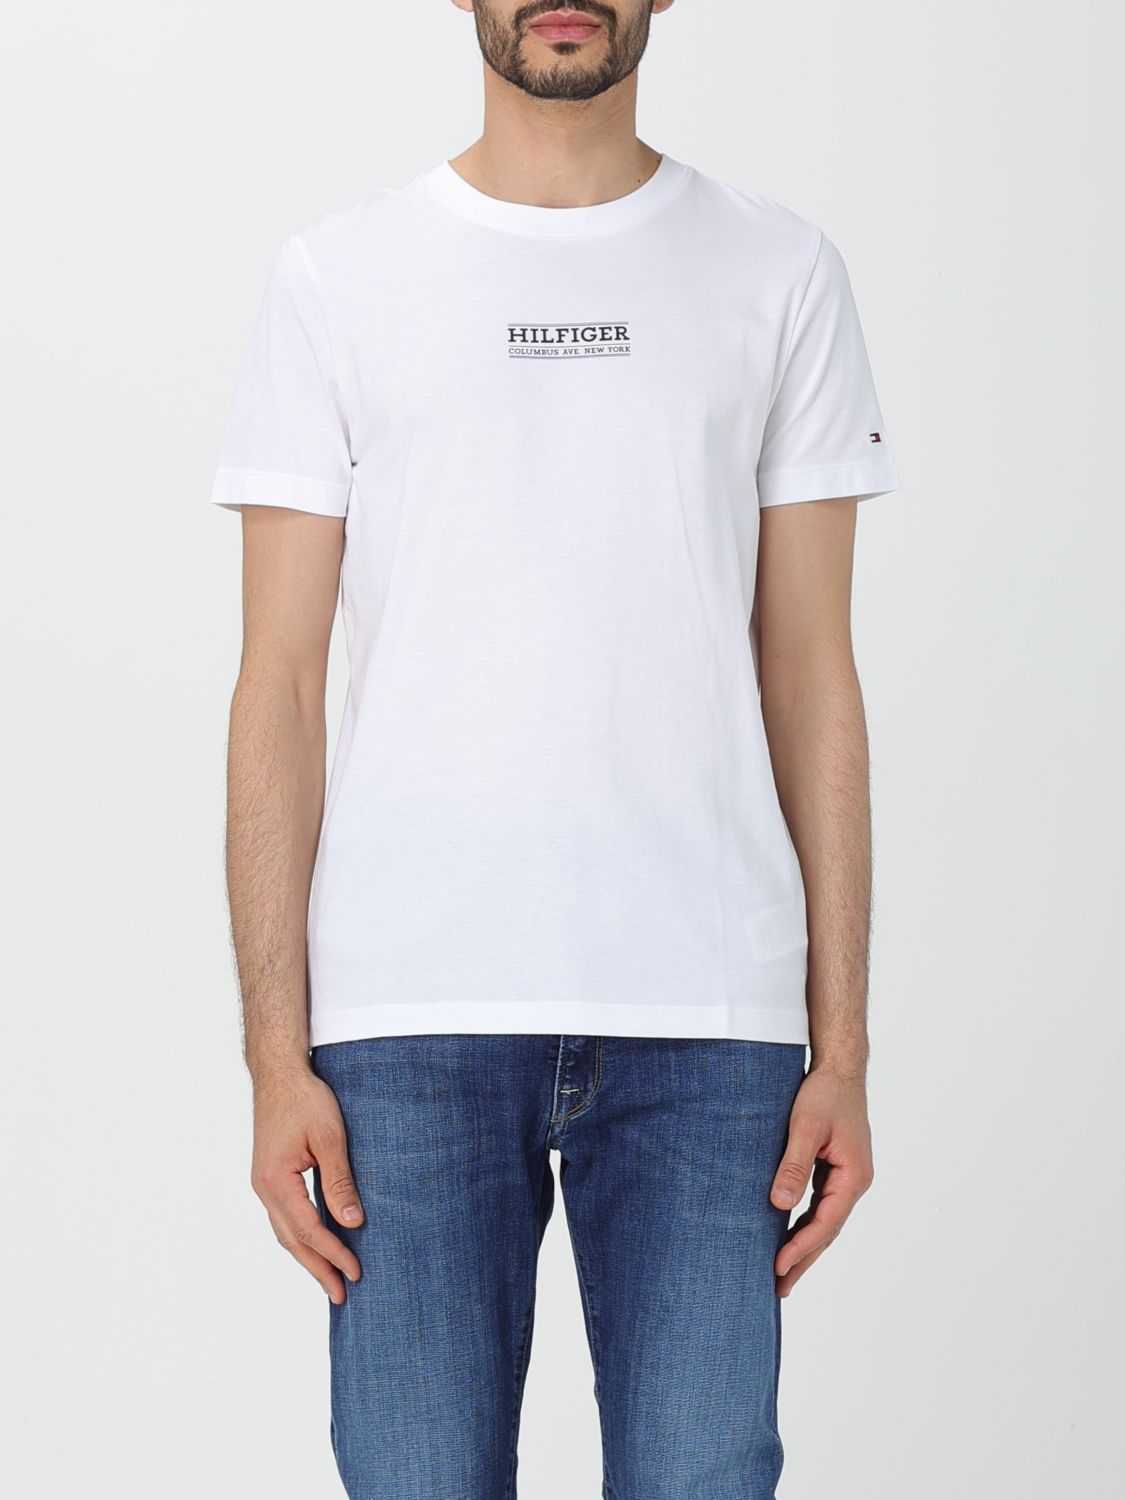 Tommy Hilfiger T-shirt  Men Colour White